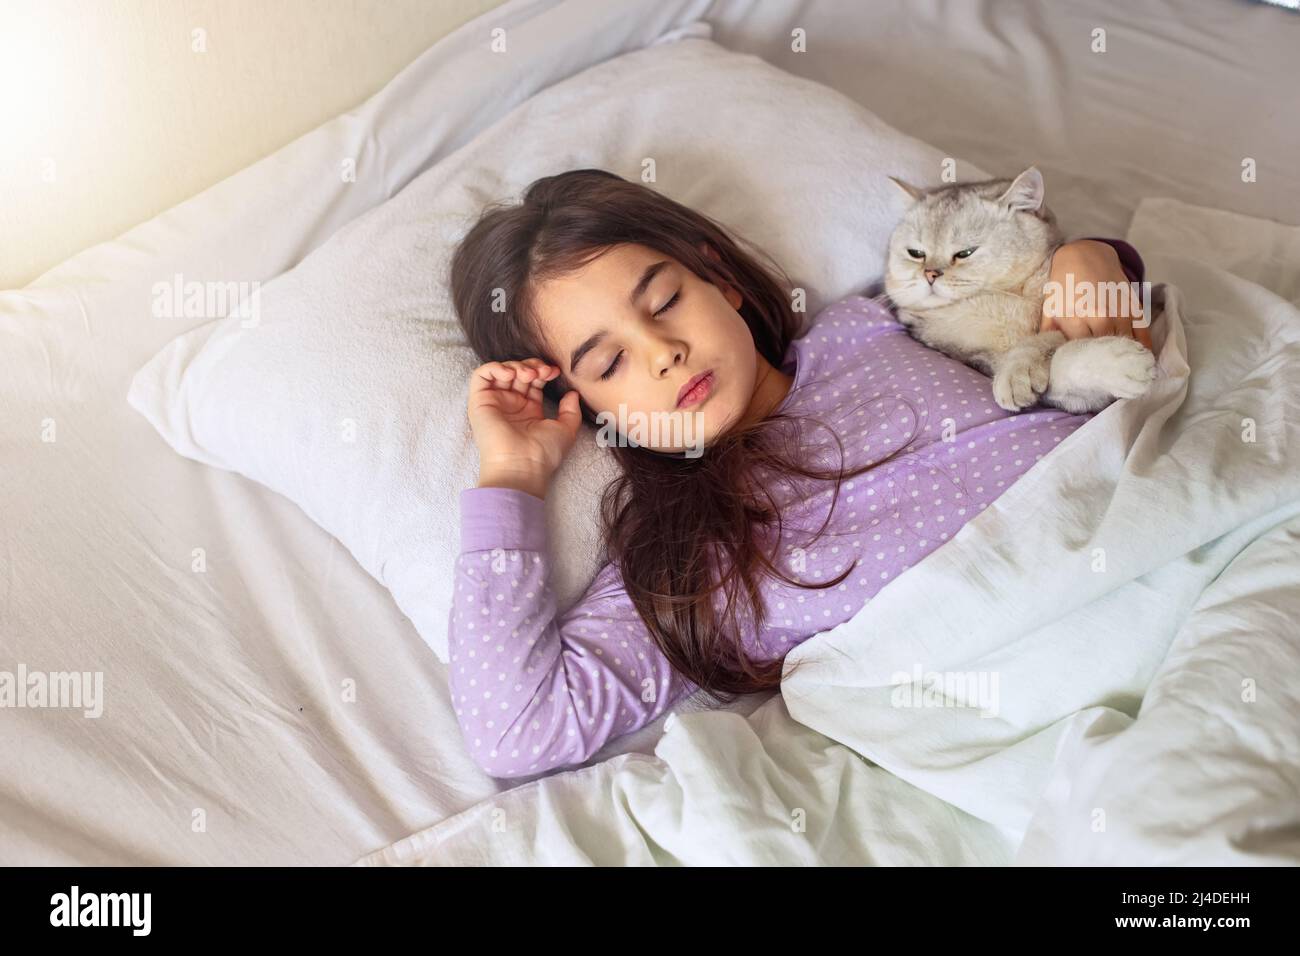 Una bambina di brunette in pigiama viola dorme abbracciando un gatto bianco affascinante adagiato su un cuscino bianco sul letto. Foto Stock